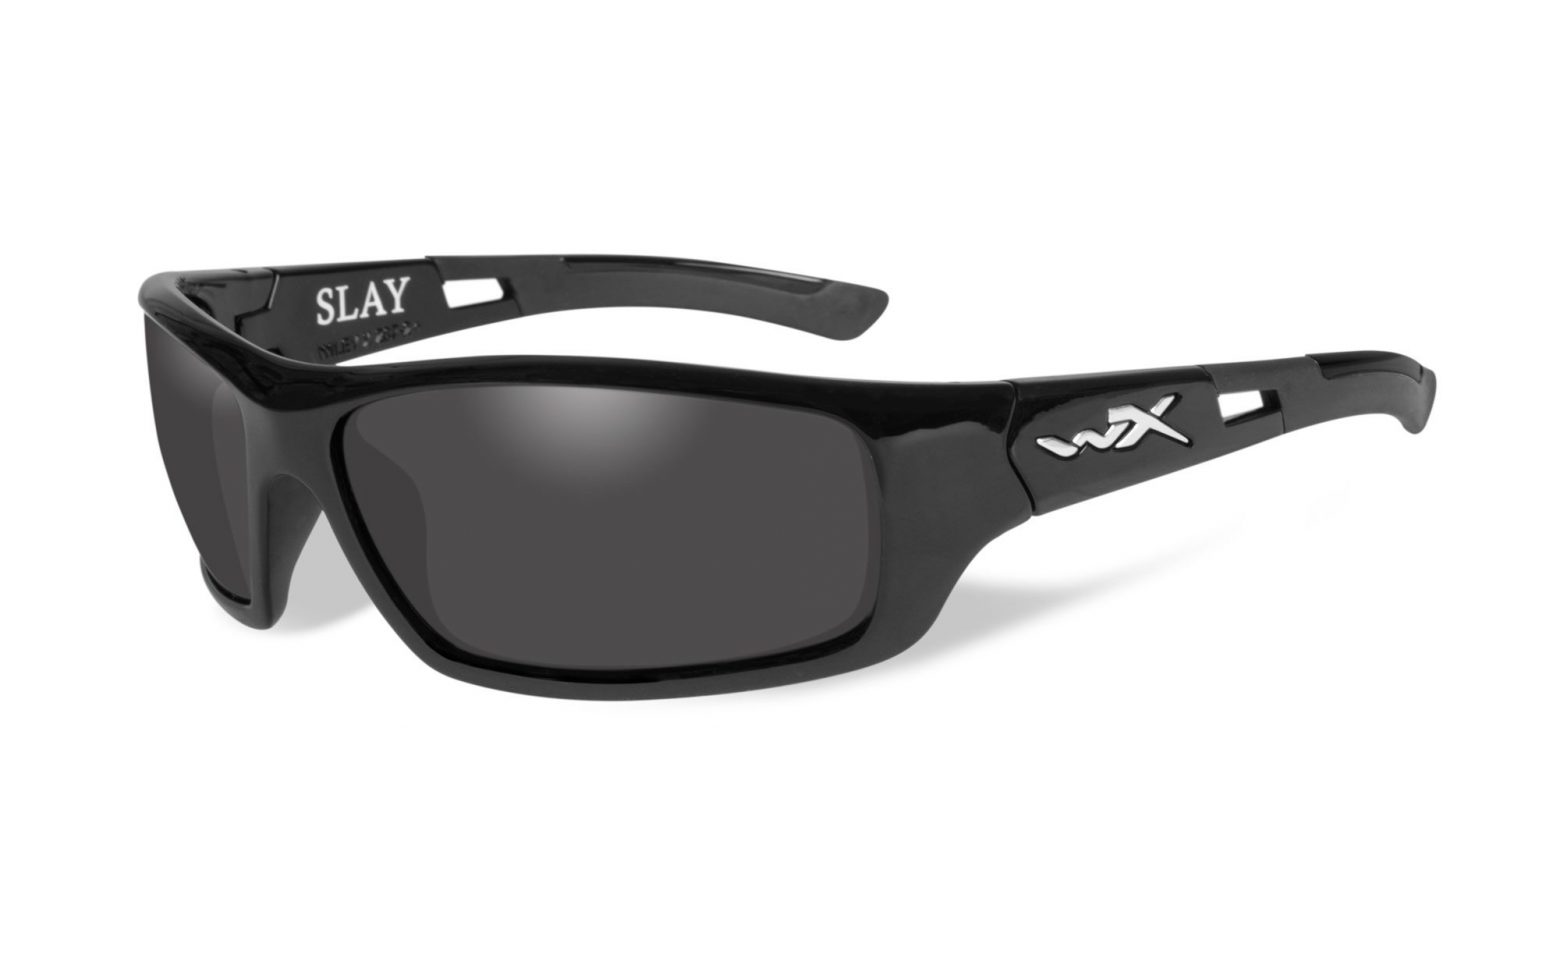 Lyra Round Clear Non-Rx Sunglasses | Women's Sunglasses | Payne Glasses |  Bifocal, Reading sunglasses, Round prescription glasses